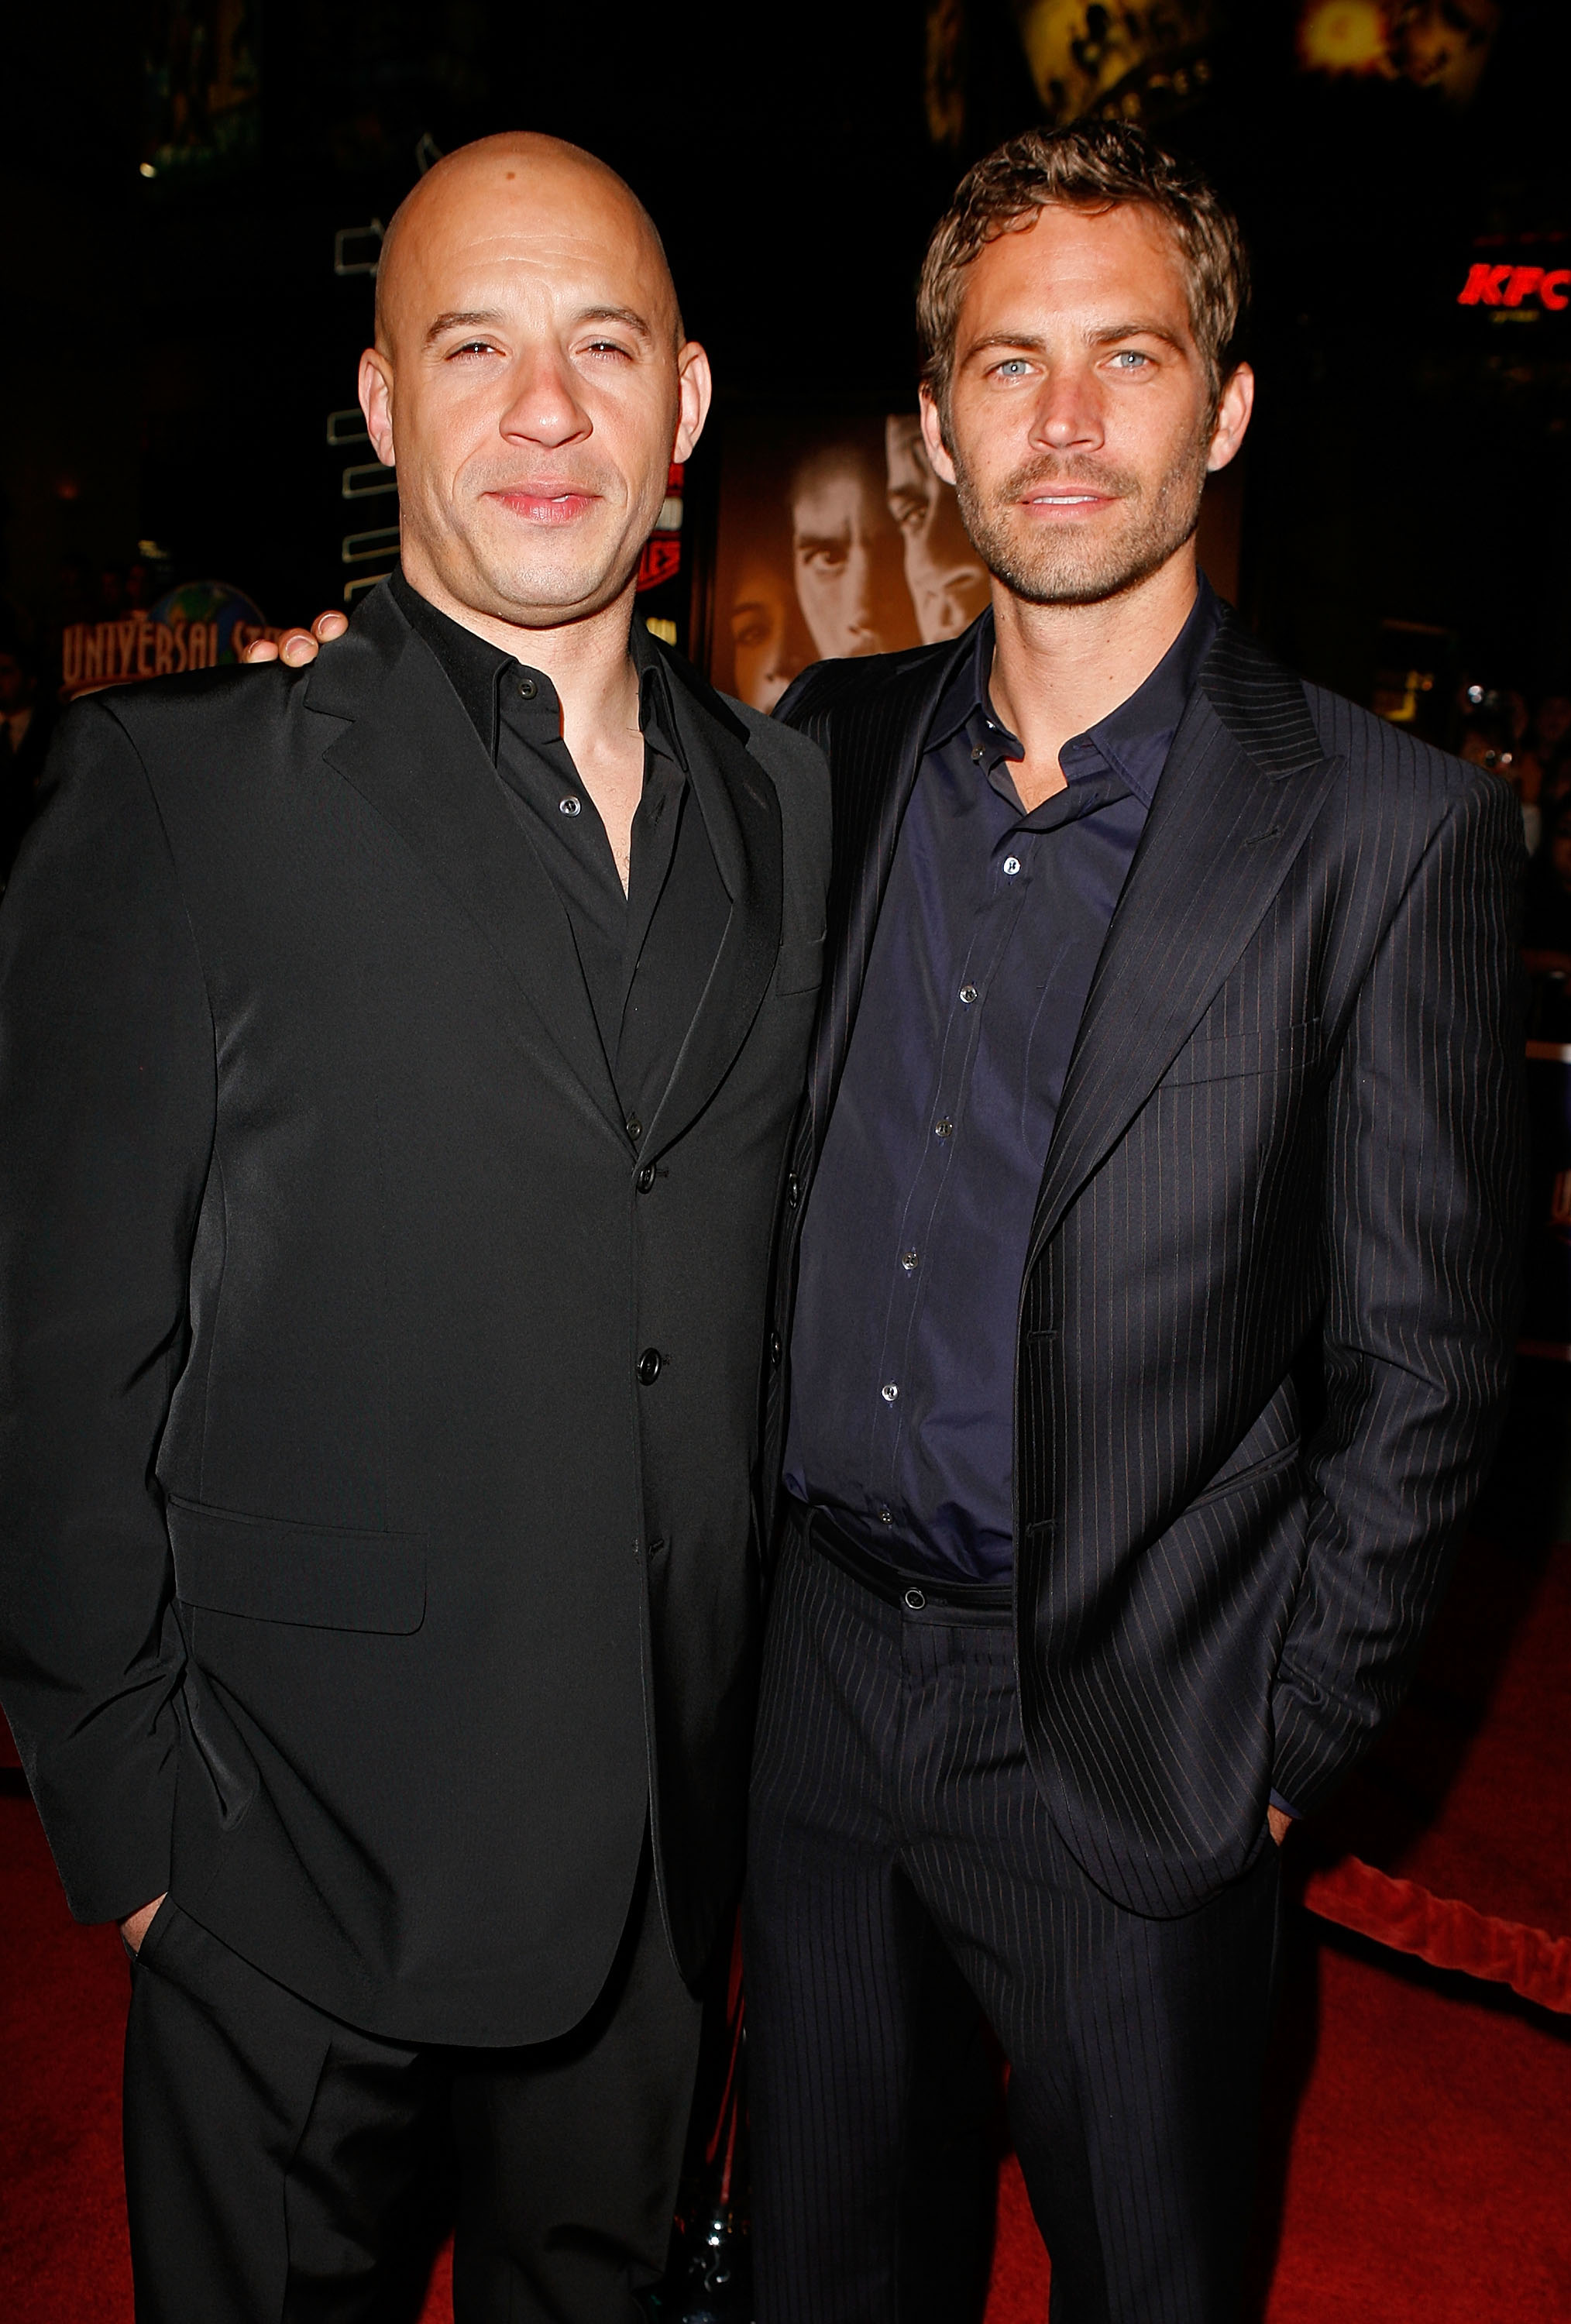 Vin Diesel and Paul Walker in California in 2009 | Source: Getty Images